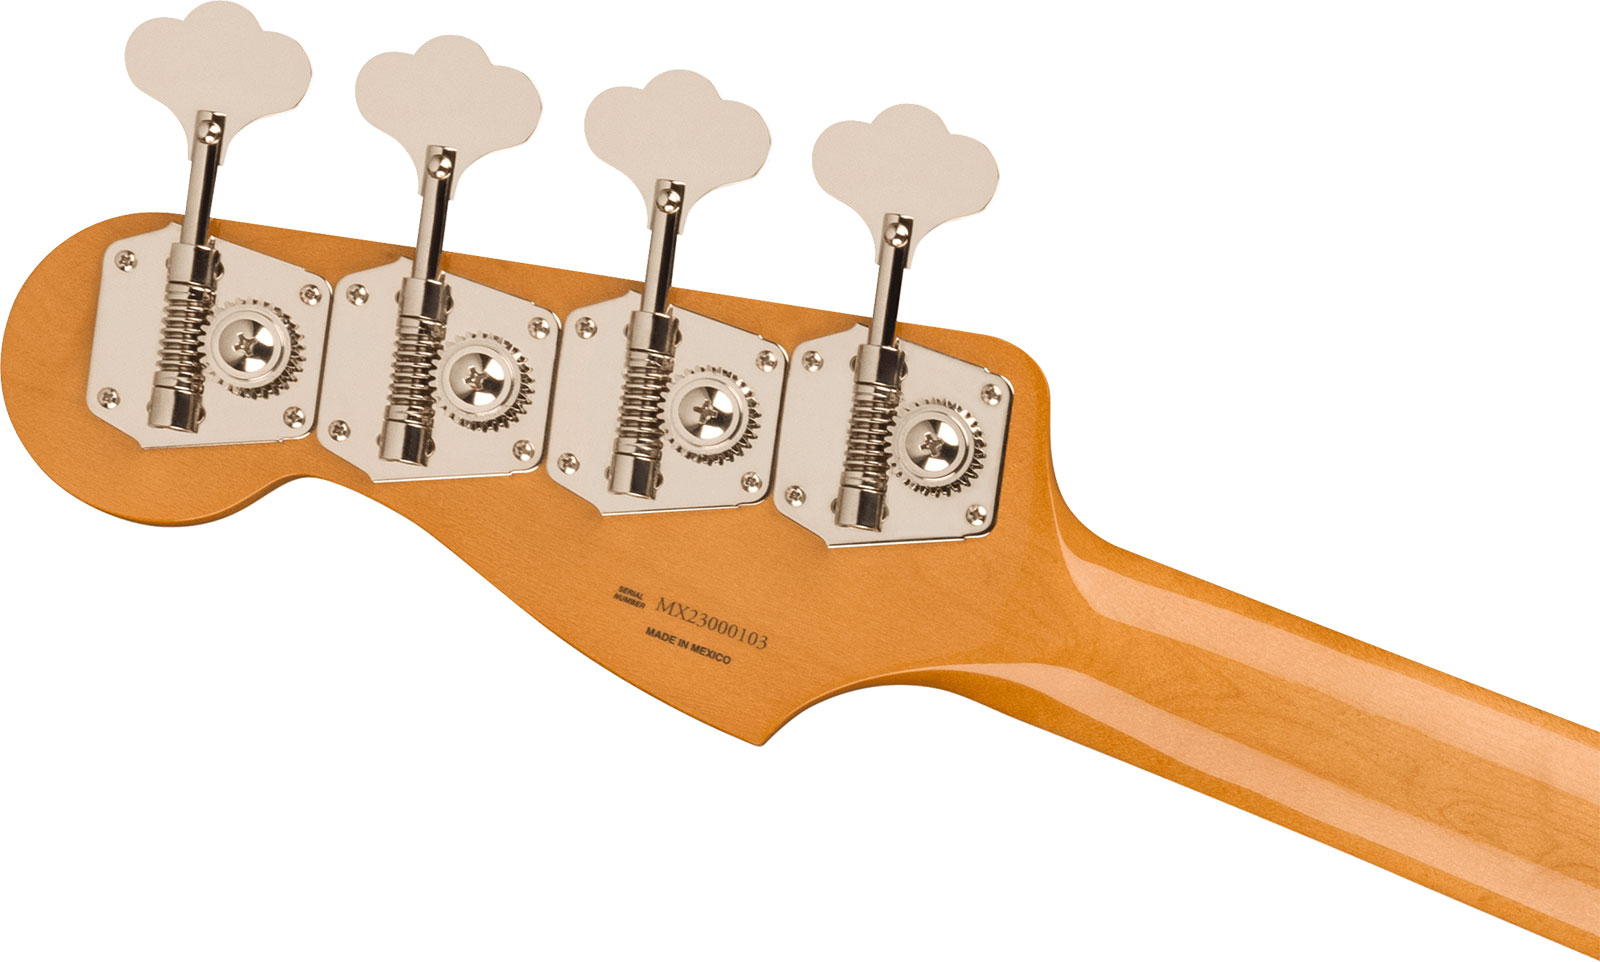 Fender Precision Bass 60s Vintera Ii Mex Rw - 3-color Sunburst - Bajo eléctrico de cuerpo sólido - Variation 3